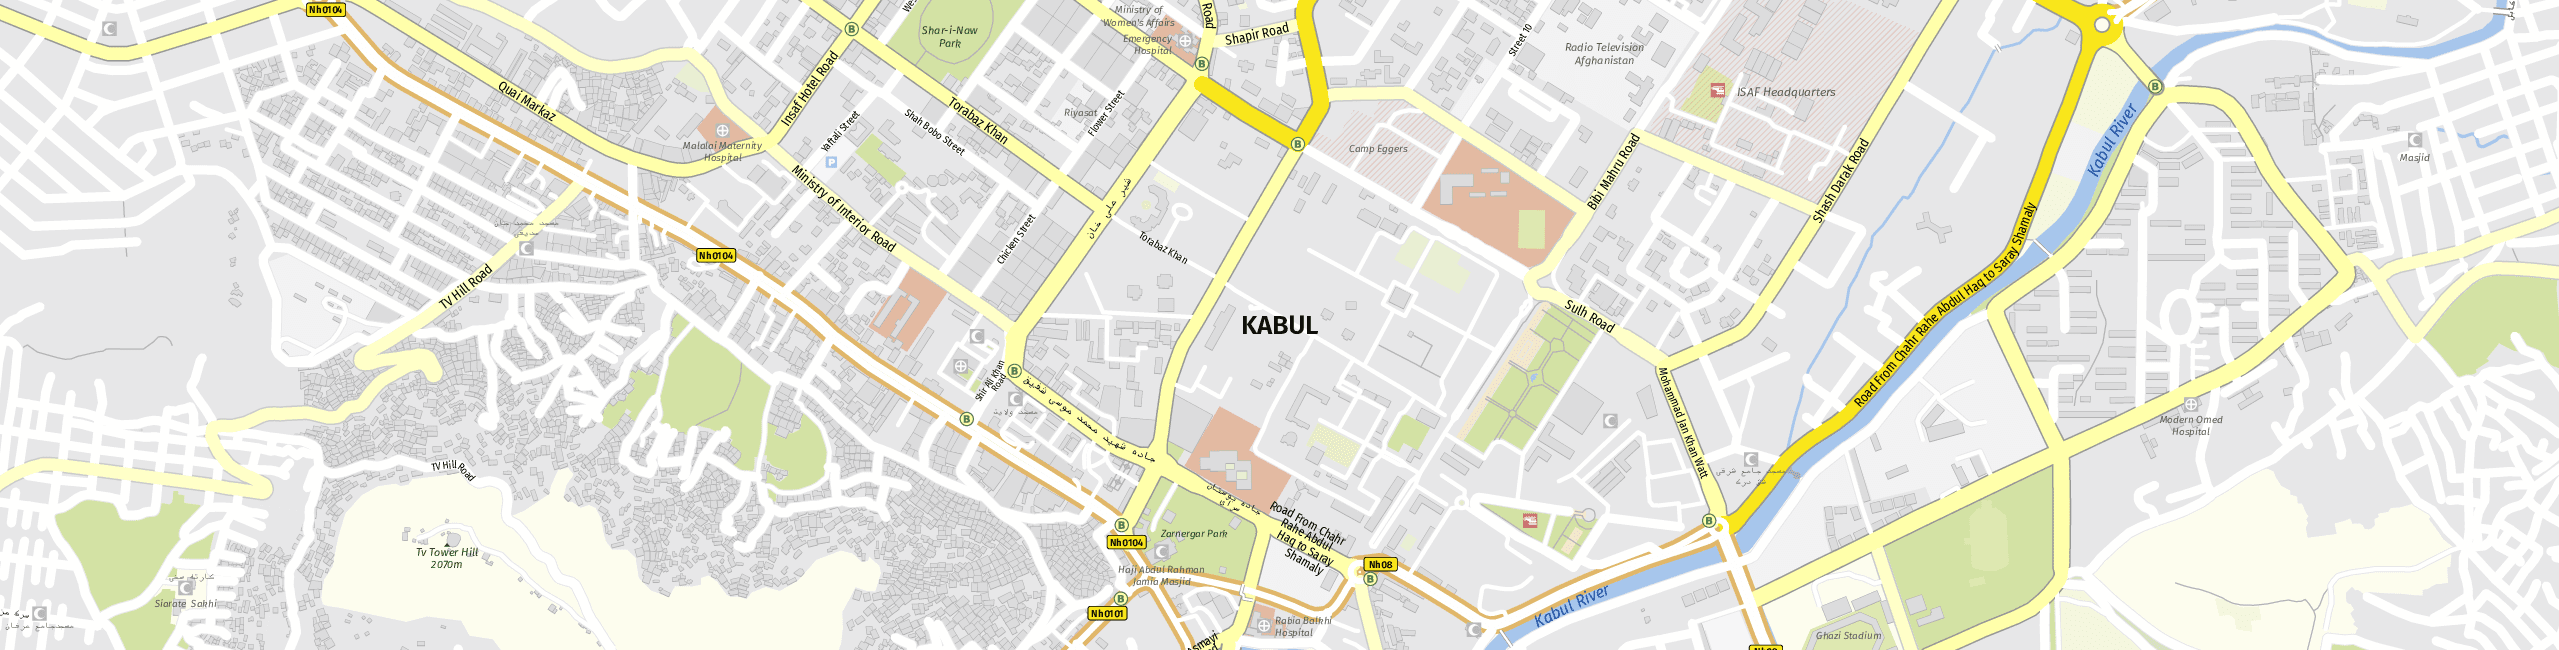 Stadtplan Kabul zum Downloaden.